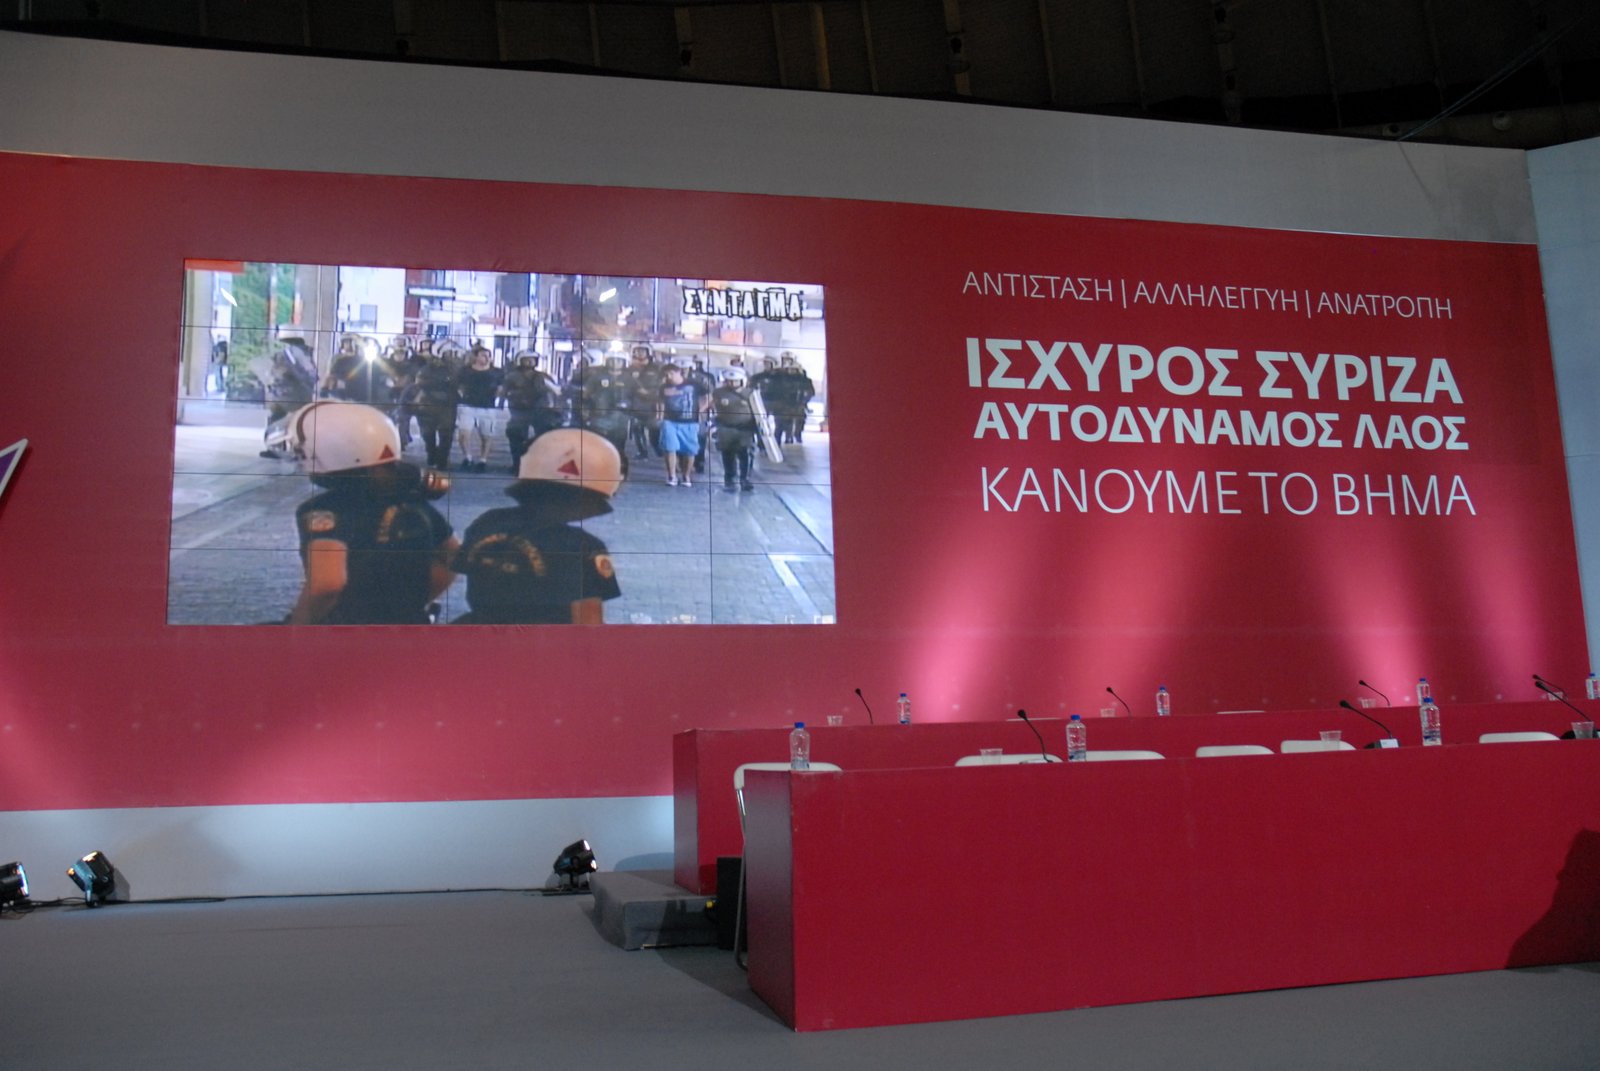 Ολόκληρη η εισηγητική ομιλία του Αλέξη Τσίπρα στο συνέδριο του ΣΥΡΙΖΑ και ΦΩΤΟ...!!! - Φωτογραφία 7